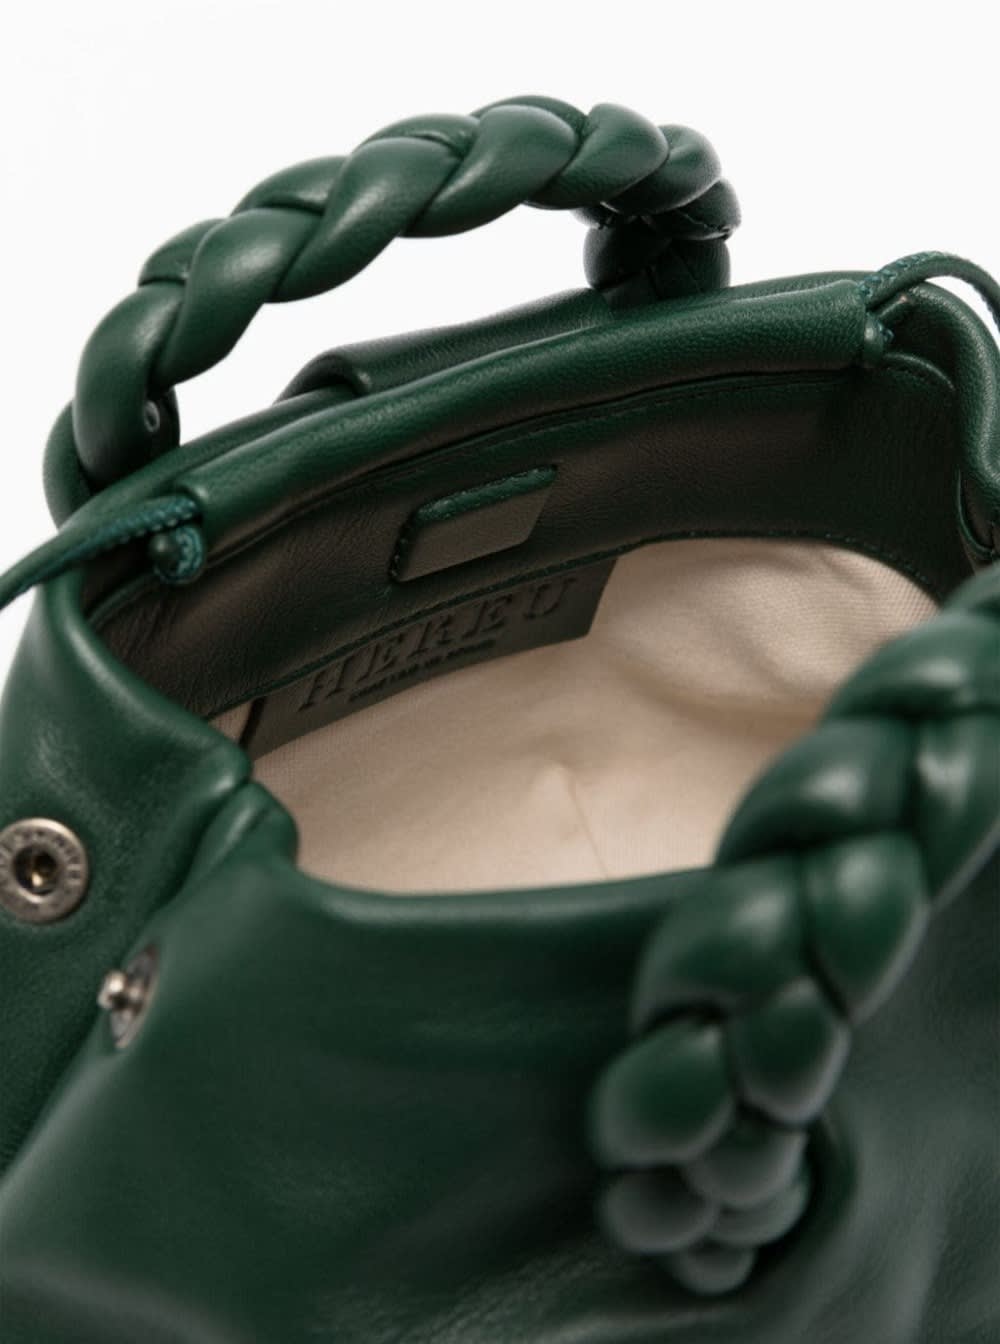 BOMBON M SUPPLE SHINY - Plaited-handle Leather Crossbody Bag